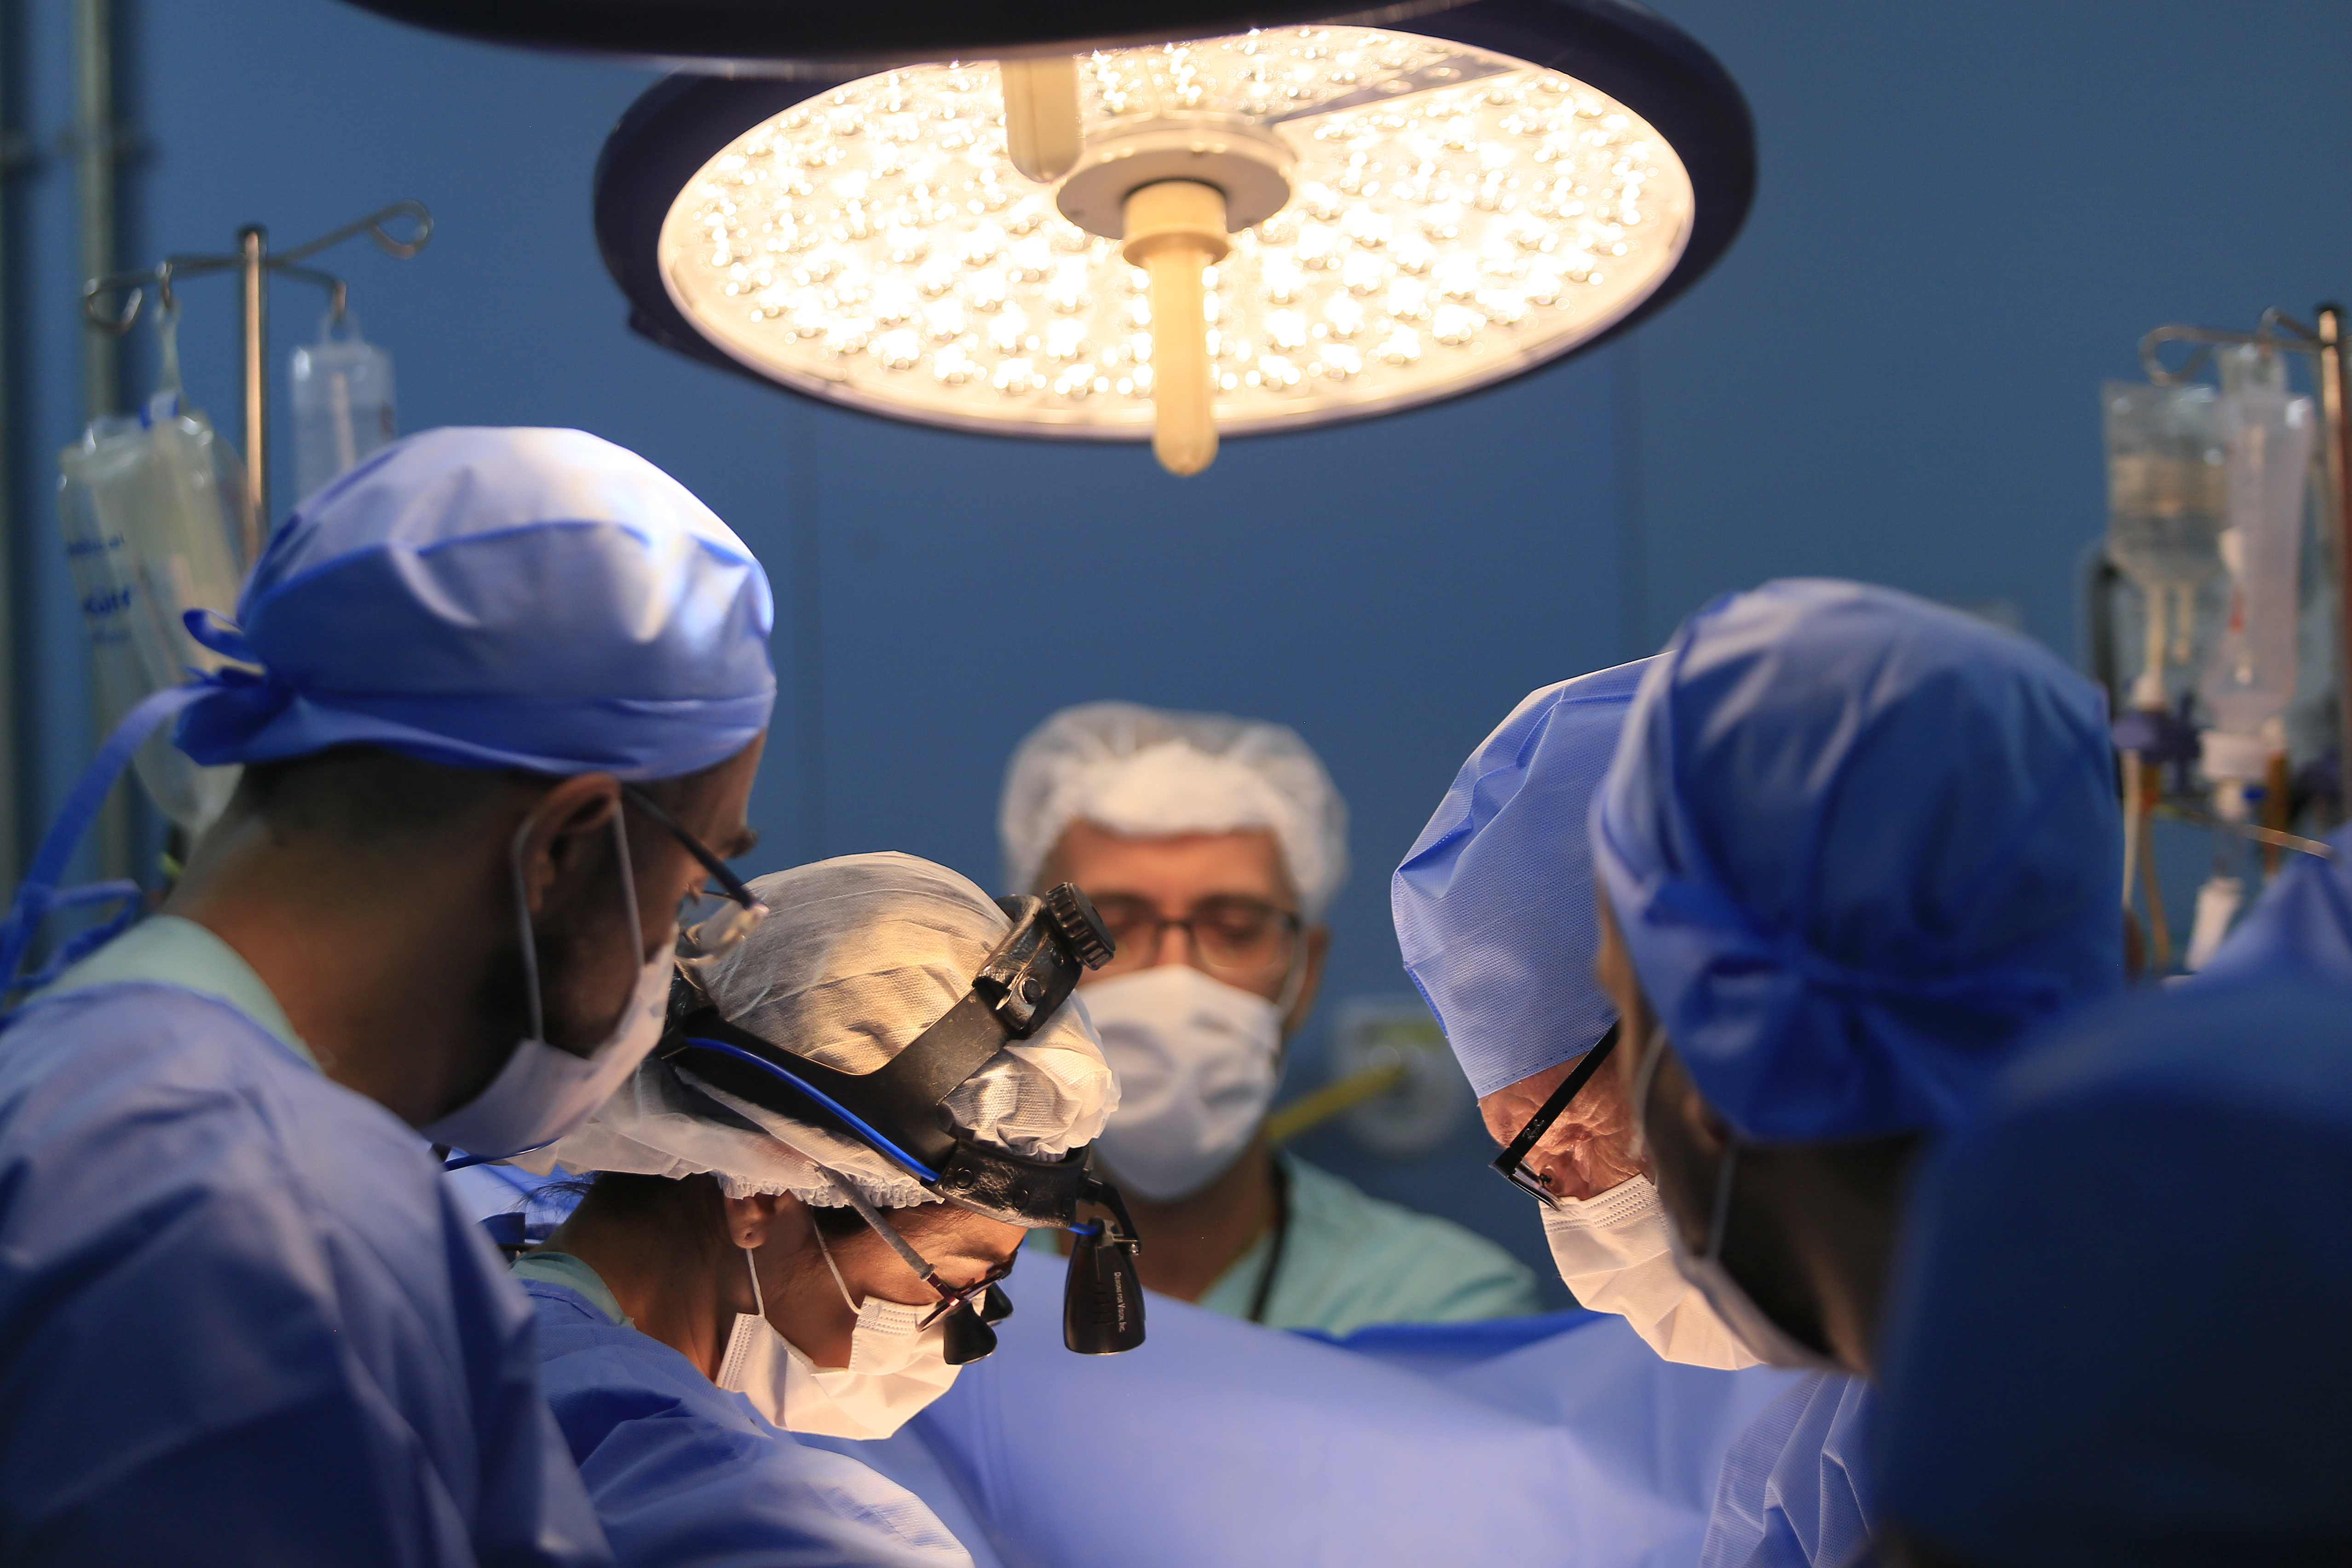 Brasília, 21/10/2019 - Retomada das cirurgias de coração de peito aberto consideradas de grande porte, após cinco anos sem realizar esse tipo de procedimento. Crédito: Davidyson Damasceno/IGESDF.